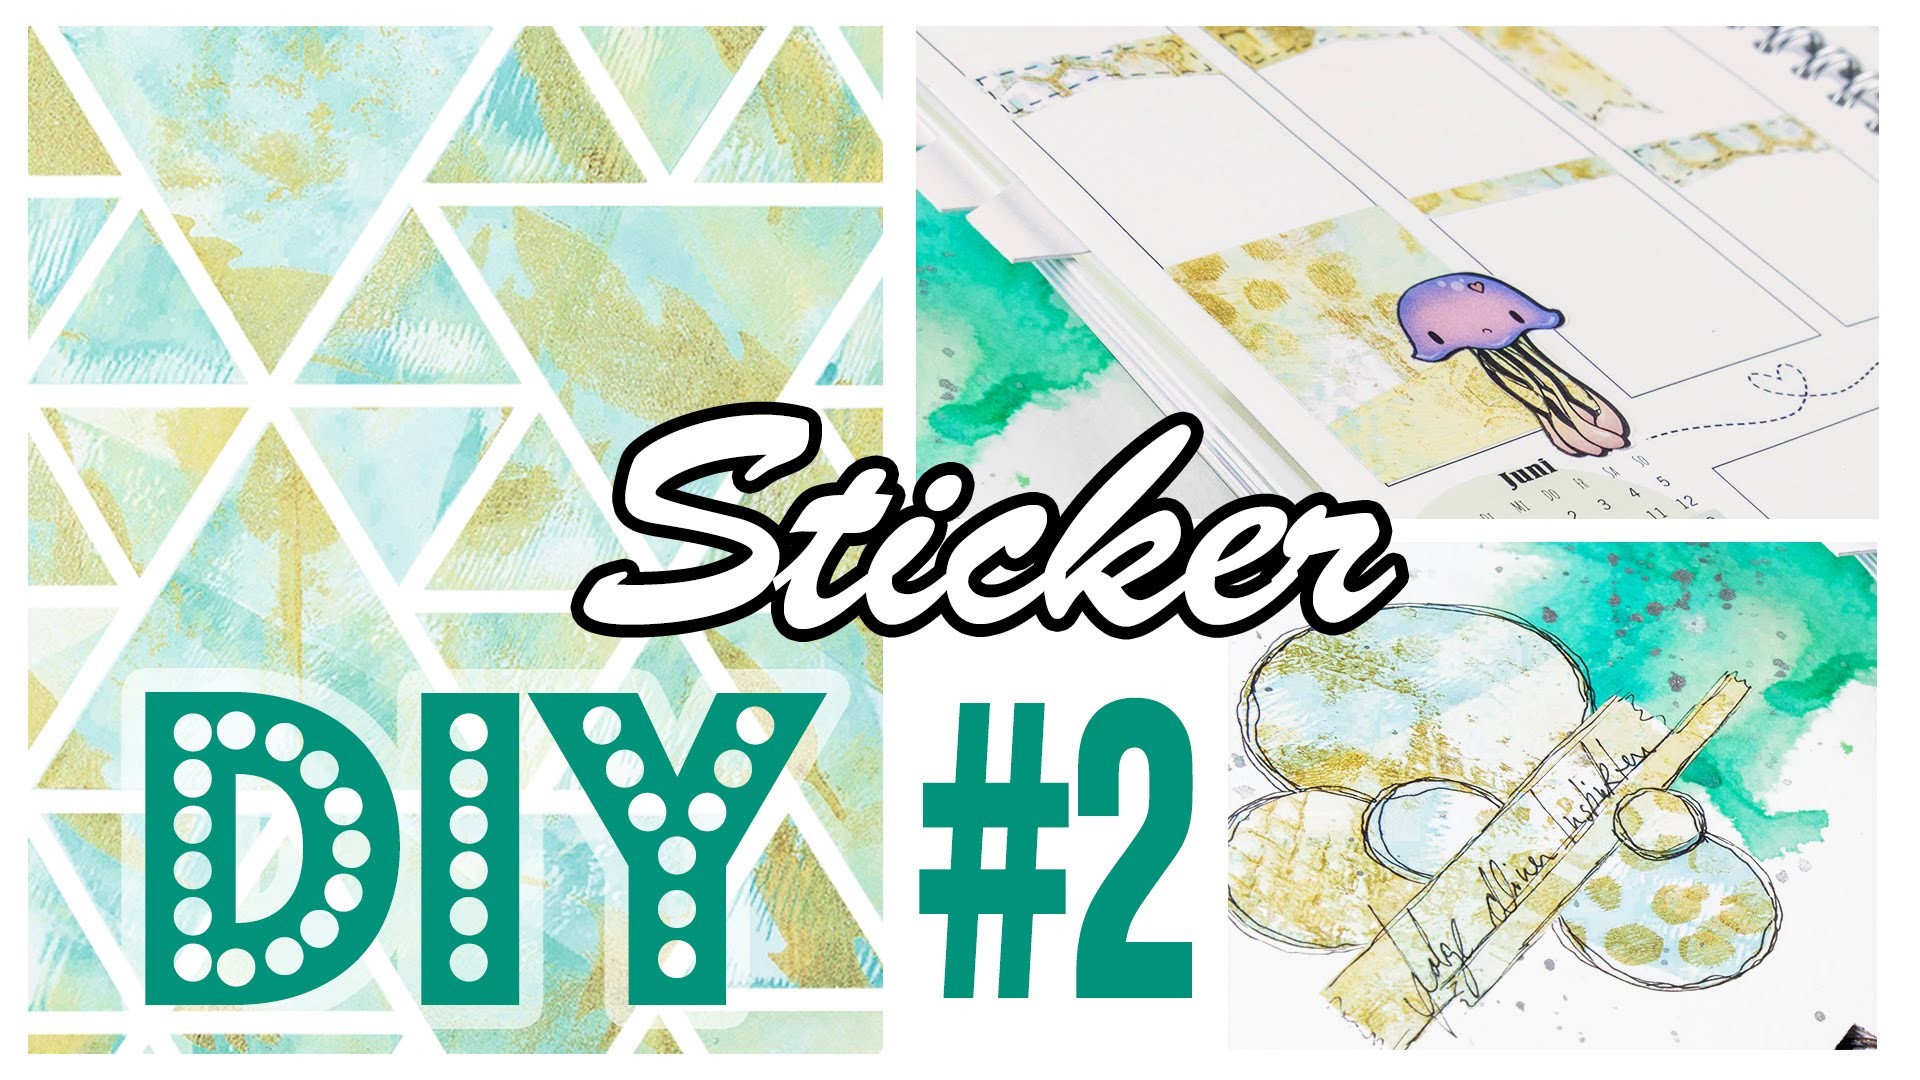 [DIY] Sticker selbermachen #2 | Gelli Plate Monoprint